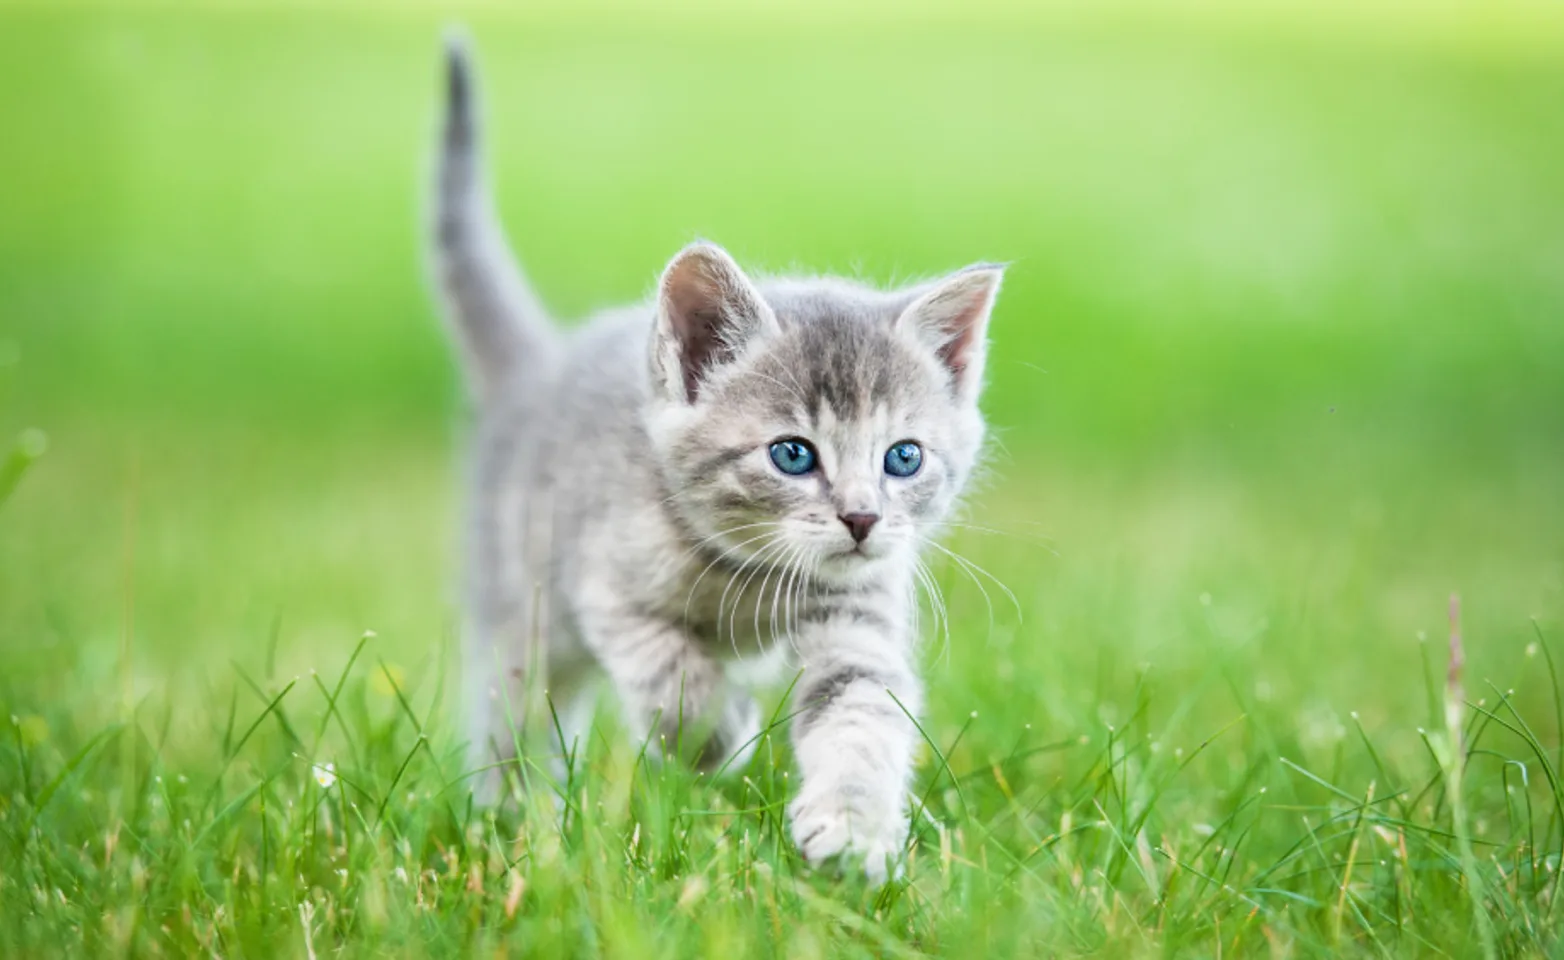 Small gray kitten walking through grass